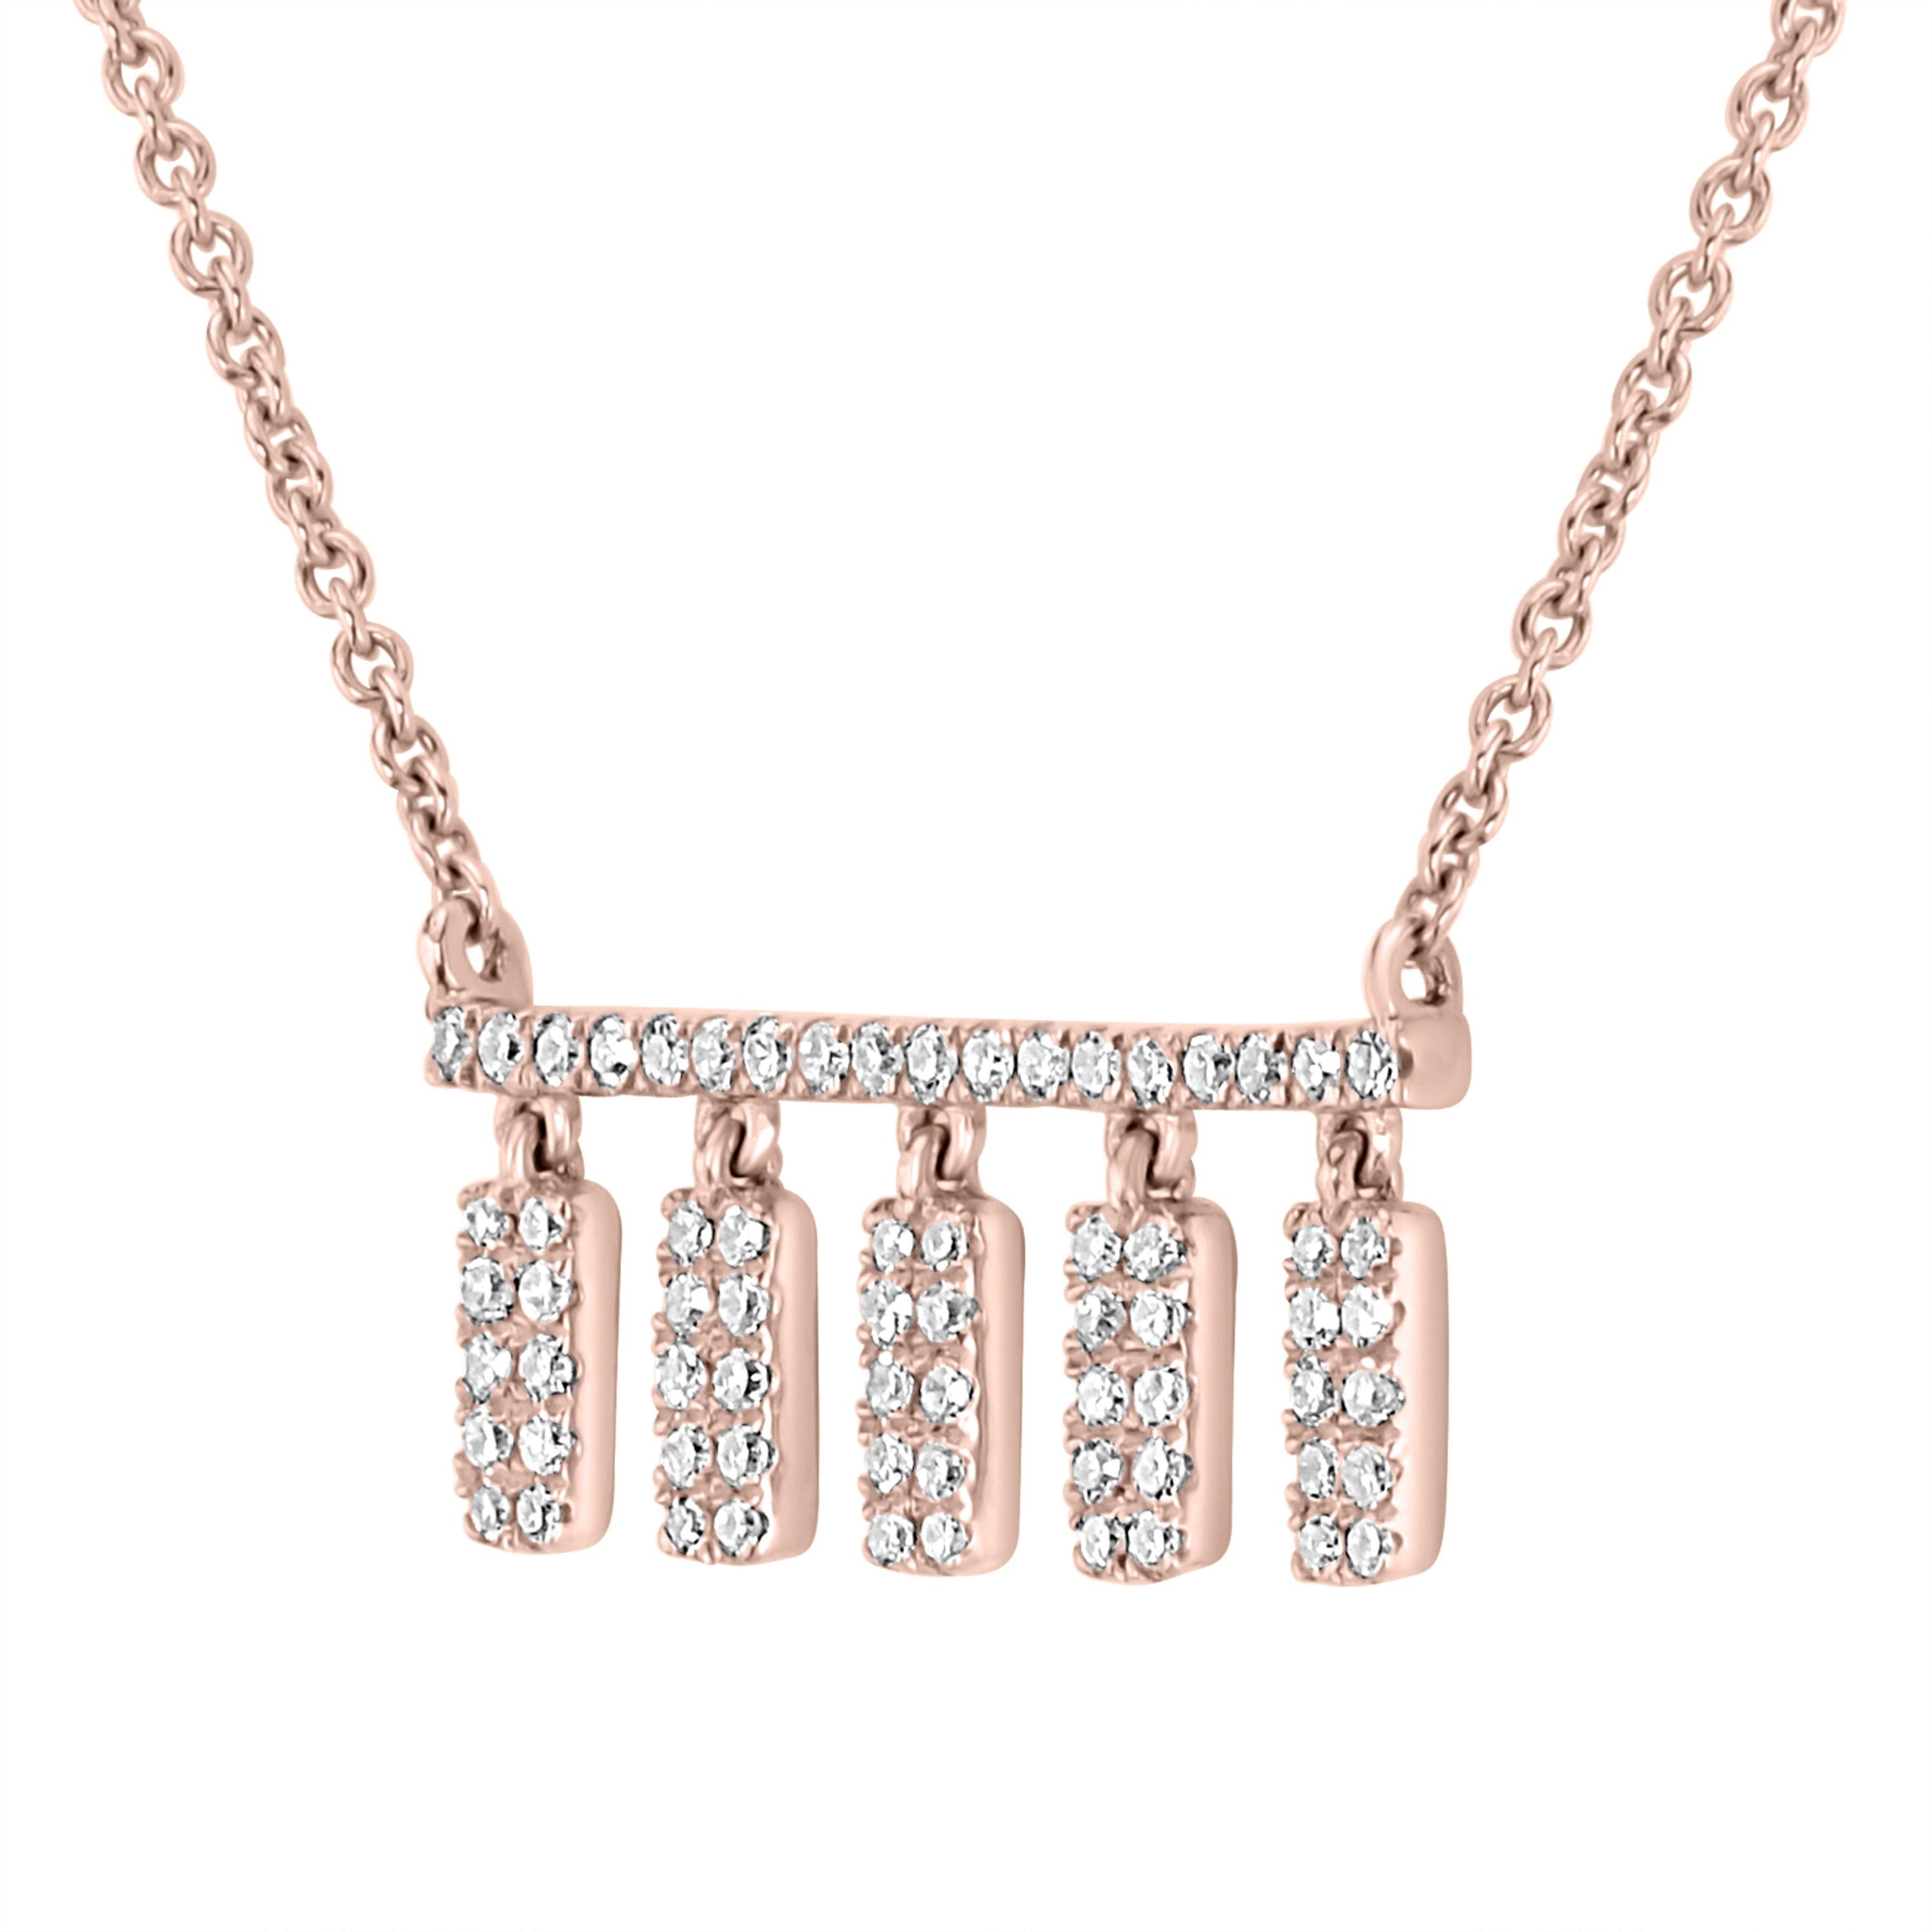 Adoptez un look classique avec ce collier pendentif Luxle composé de barres rectangulaires ornées de diamants ronds pavés scintillants qui tombent en cascade sur une délicate chaîne câblée en or rose 14 carats.

Suivez la vitrine de Luxury Jewels